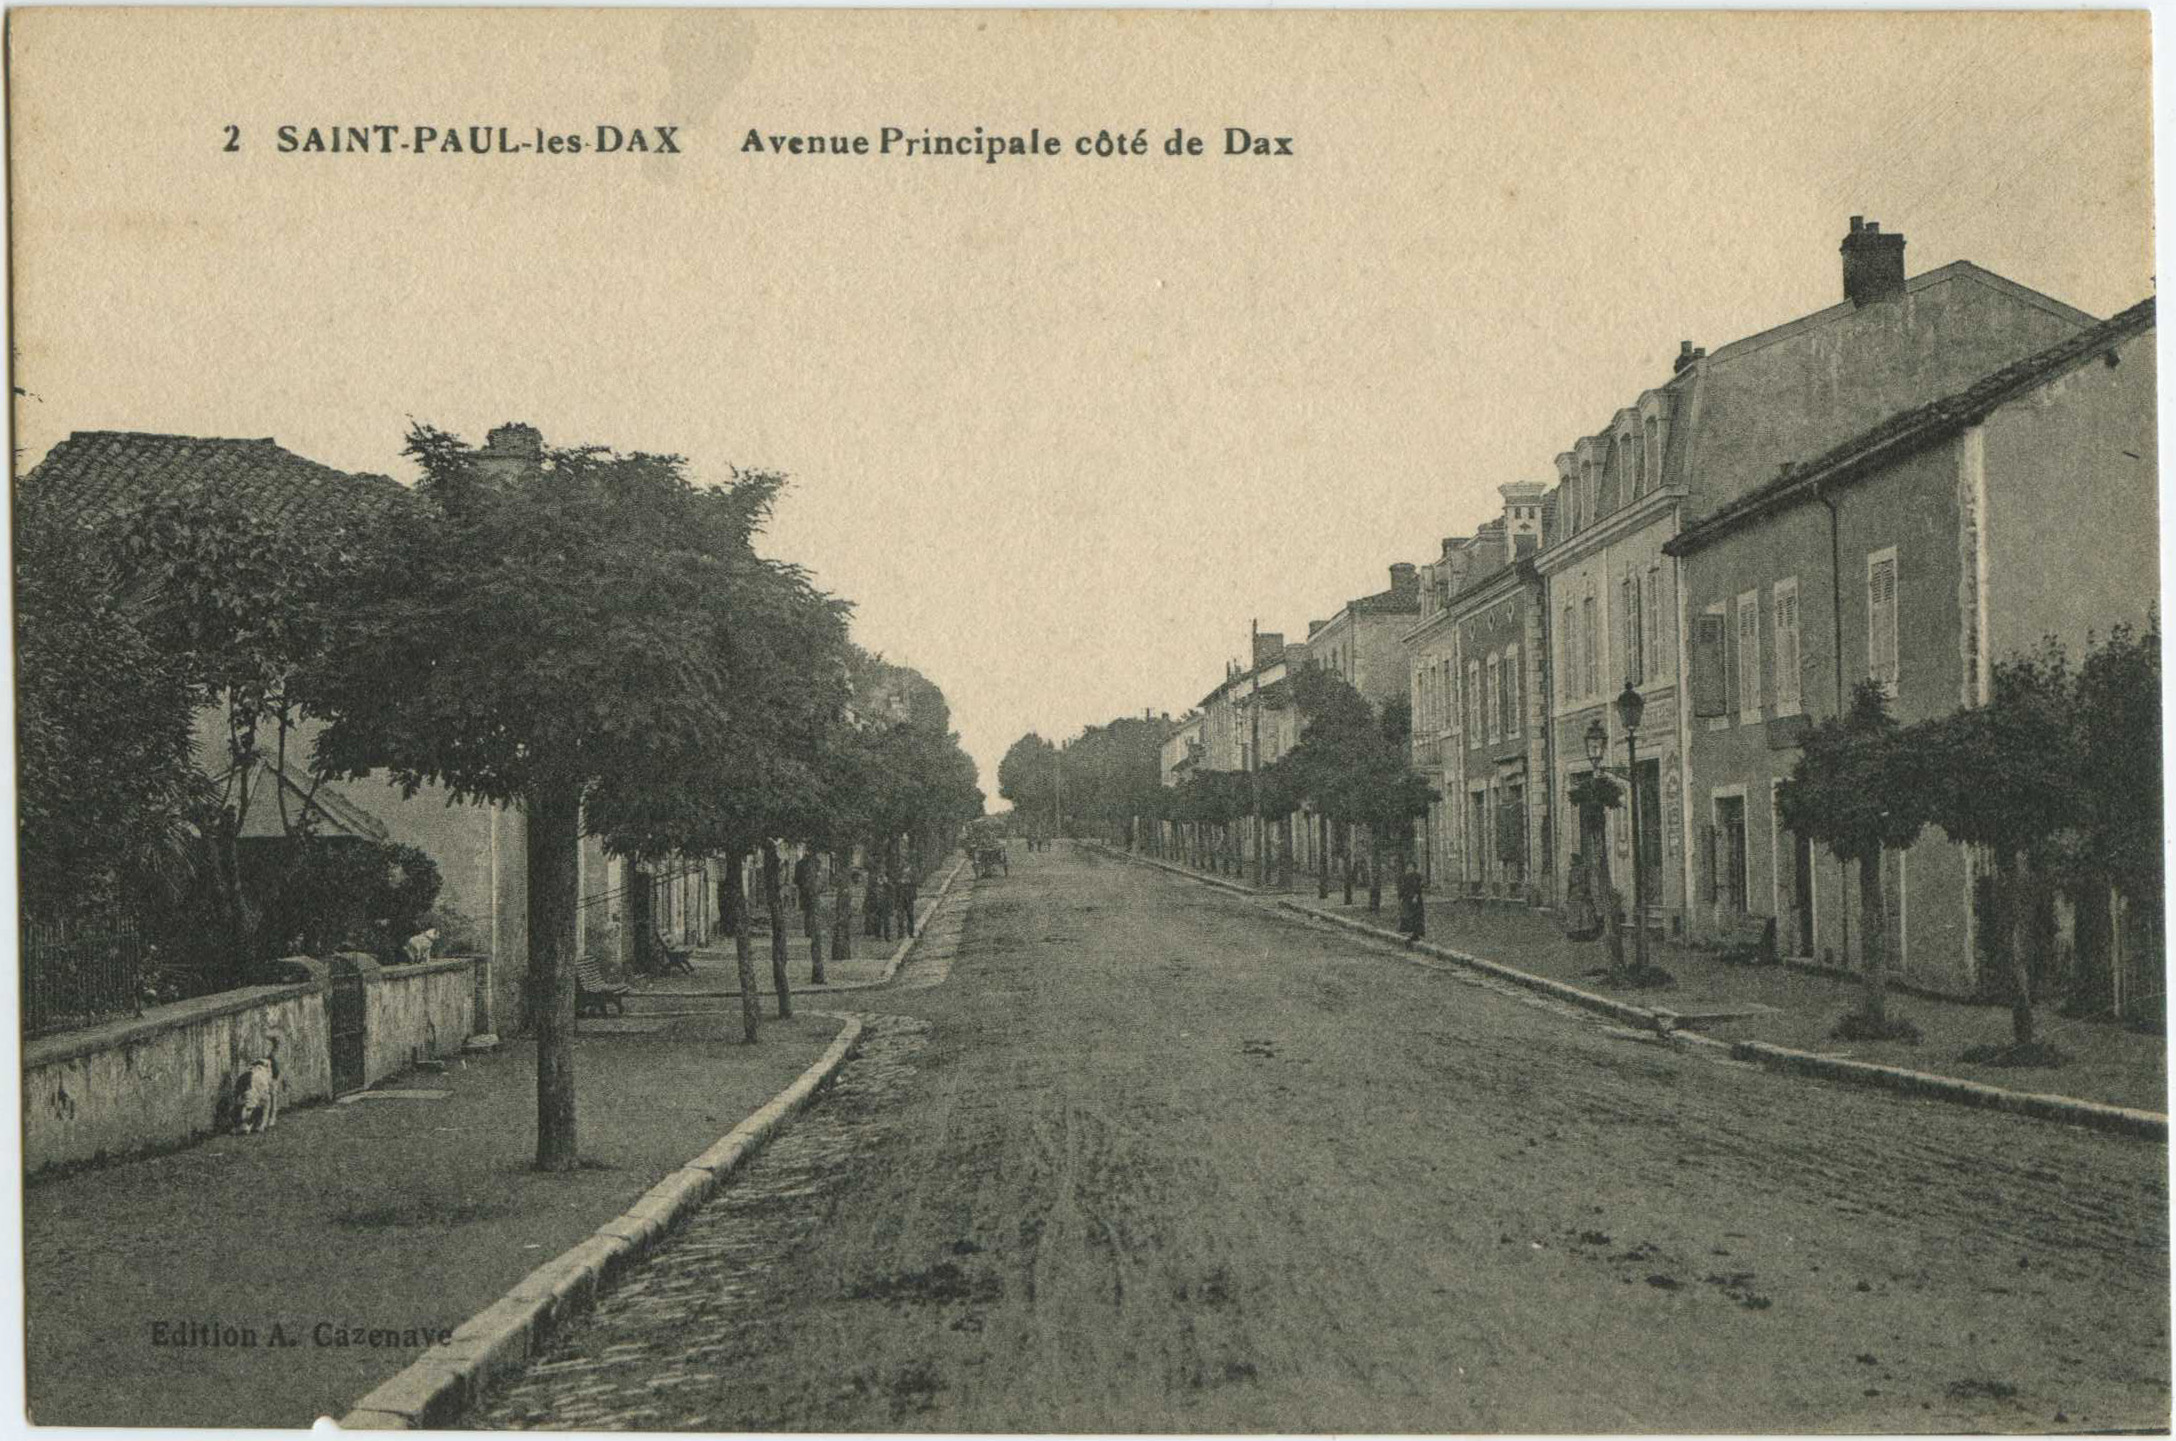 Saint-Paul-lès-Dax - Avenue Principale côté de Dax